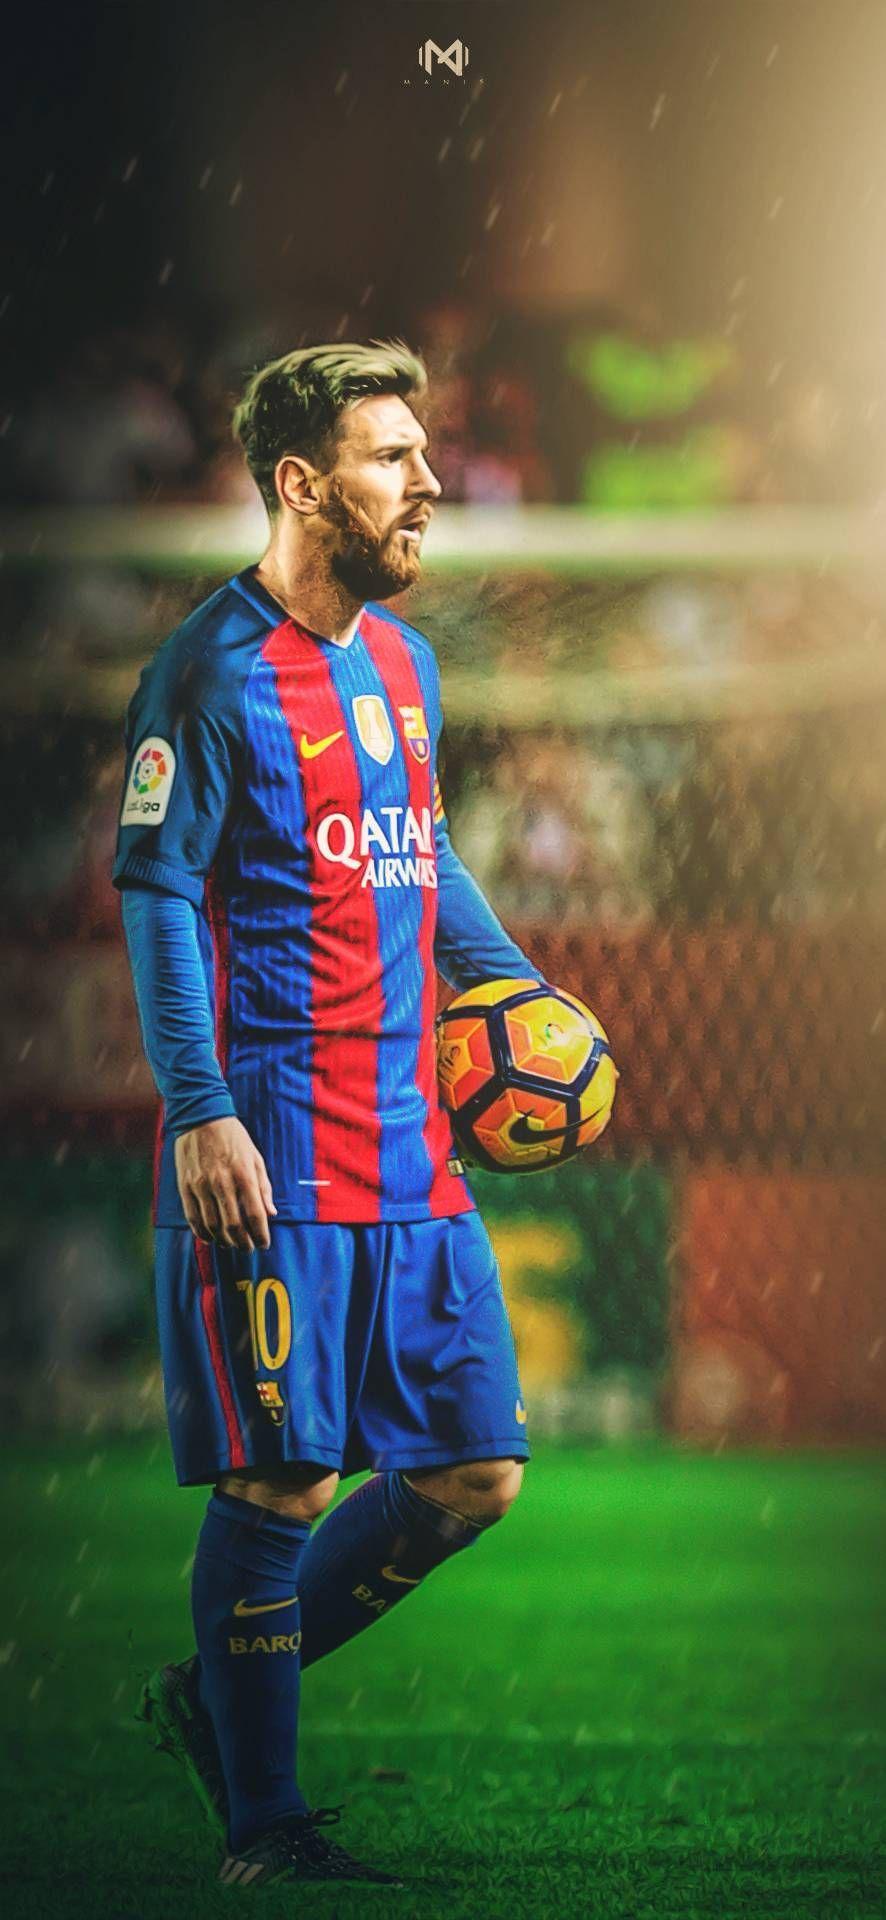 Ứng dụng ngay Messi Full HD wallpapers để có được hình nền chất lượng cao đẹp mắt của cầu thủ đáng kinh ngạc này. Hình ảnh sẽ rực rỡ và sống động ngay trên màn hình của bạn.